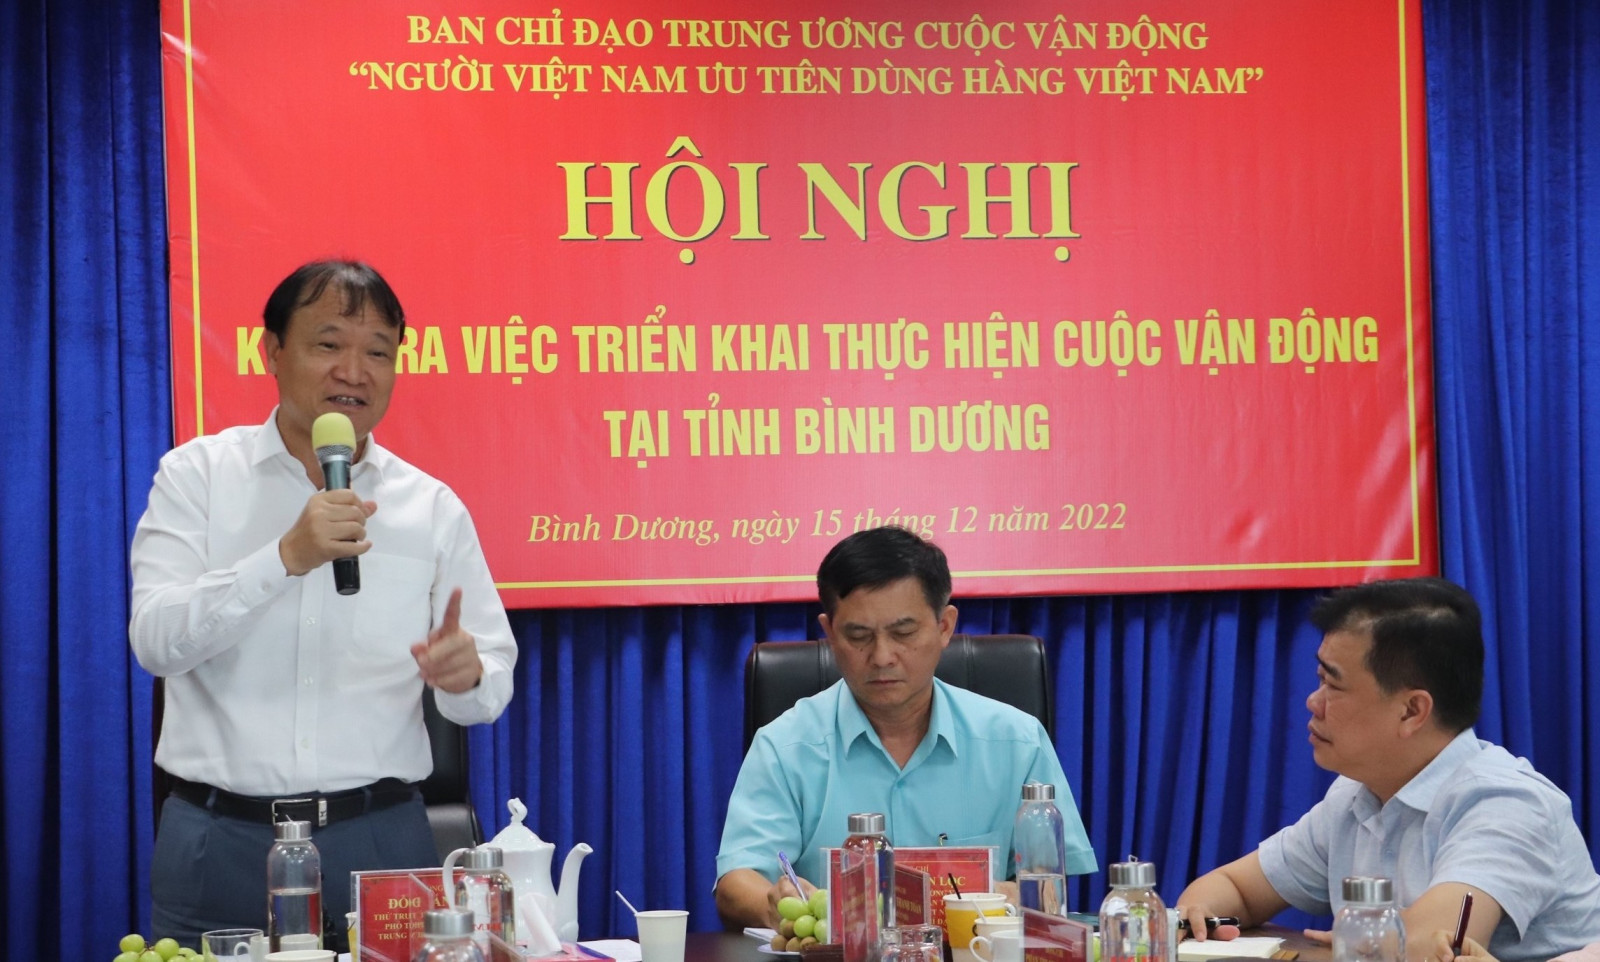 Từng bước đưa hàng Việt chiếm lĩnh thị trường, tạo niềm tin với người tiêu dùng